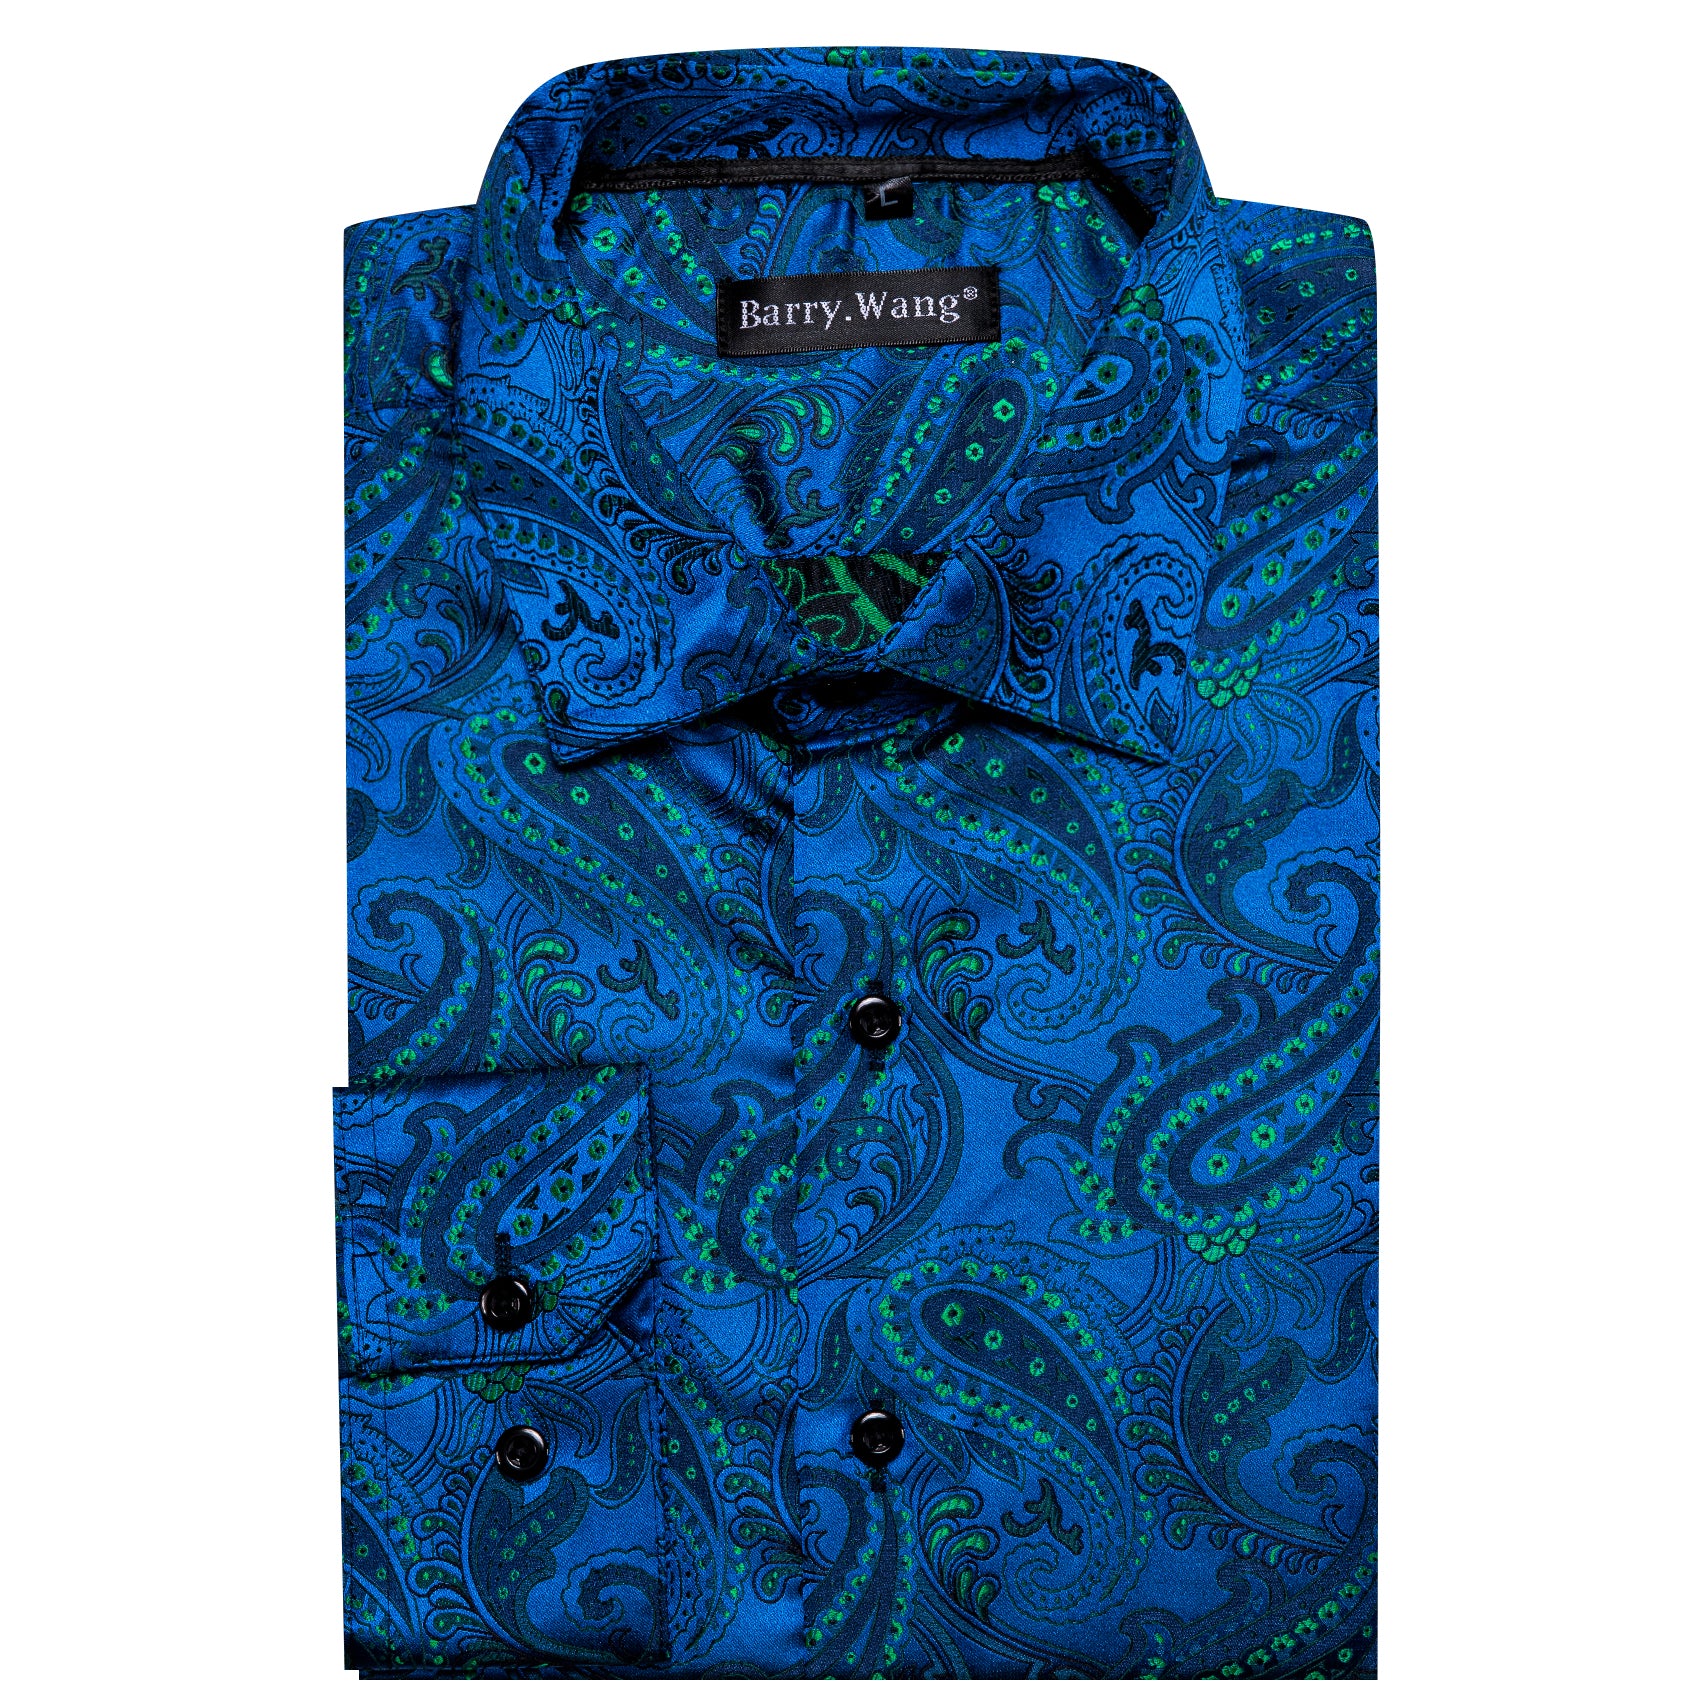 Barry.wang Button Down Shirt Peacock Blue Green Floral Silk Men's Shirt